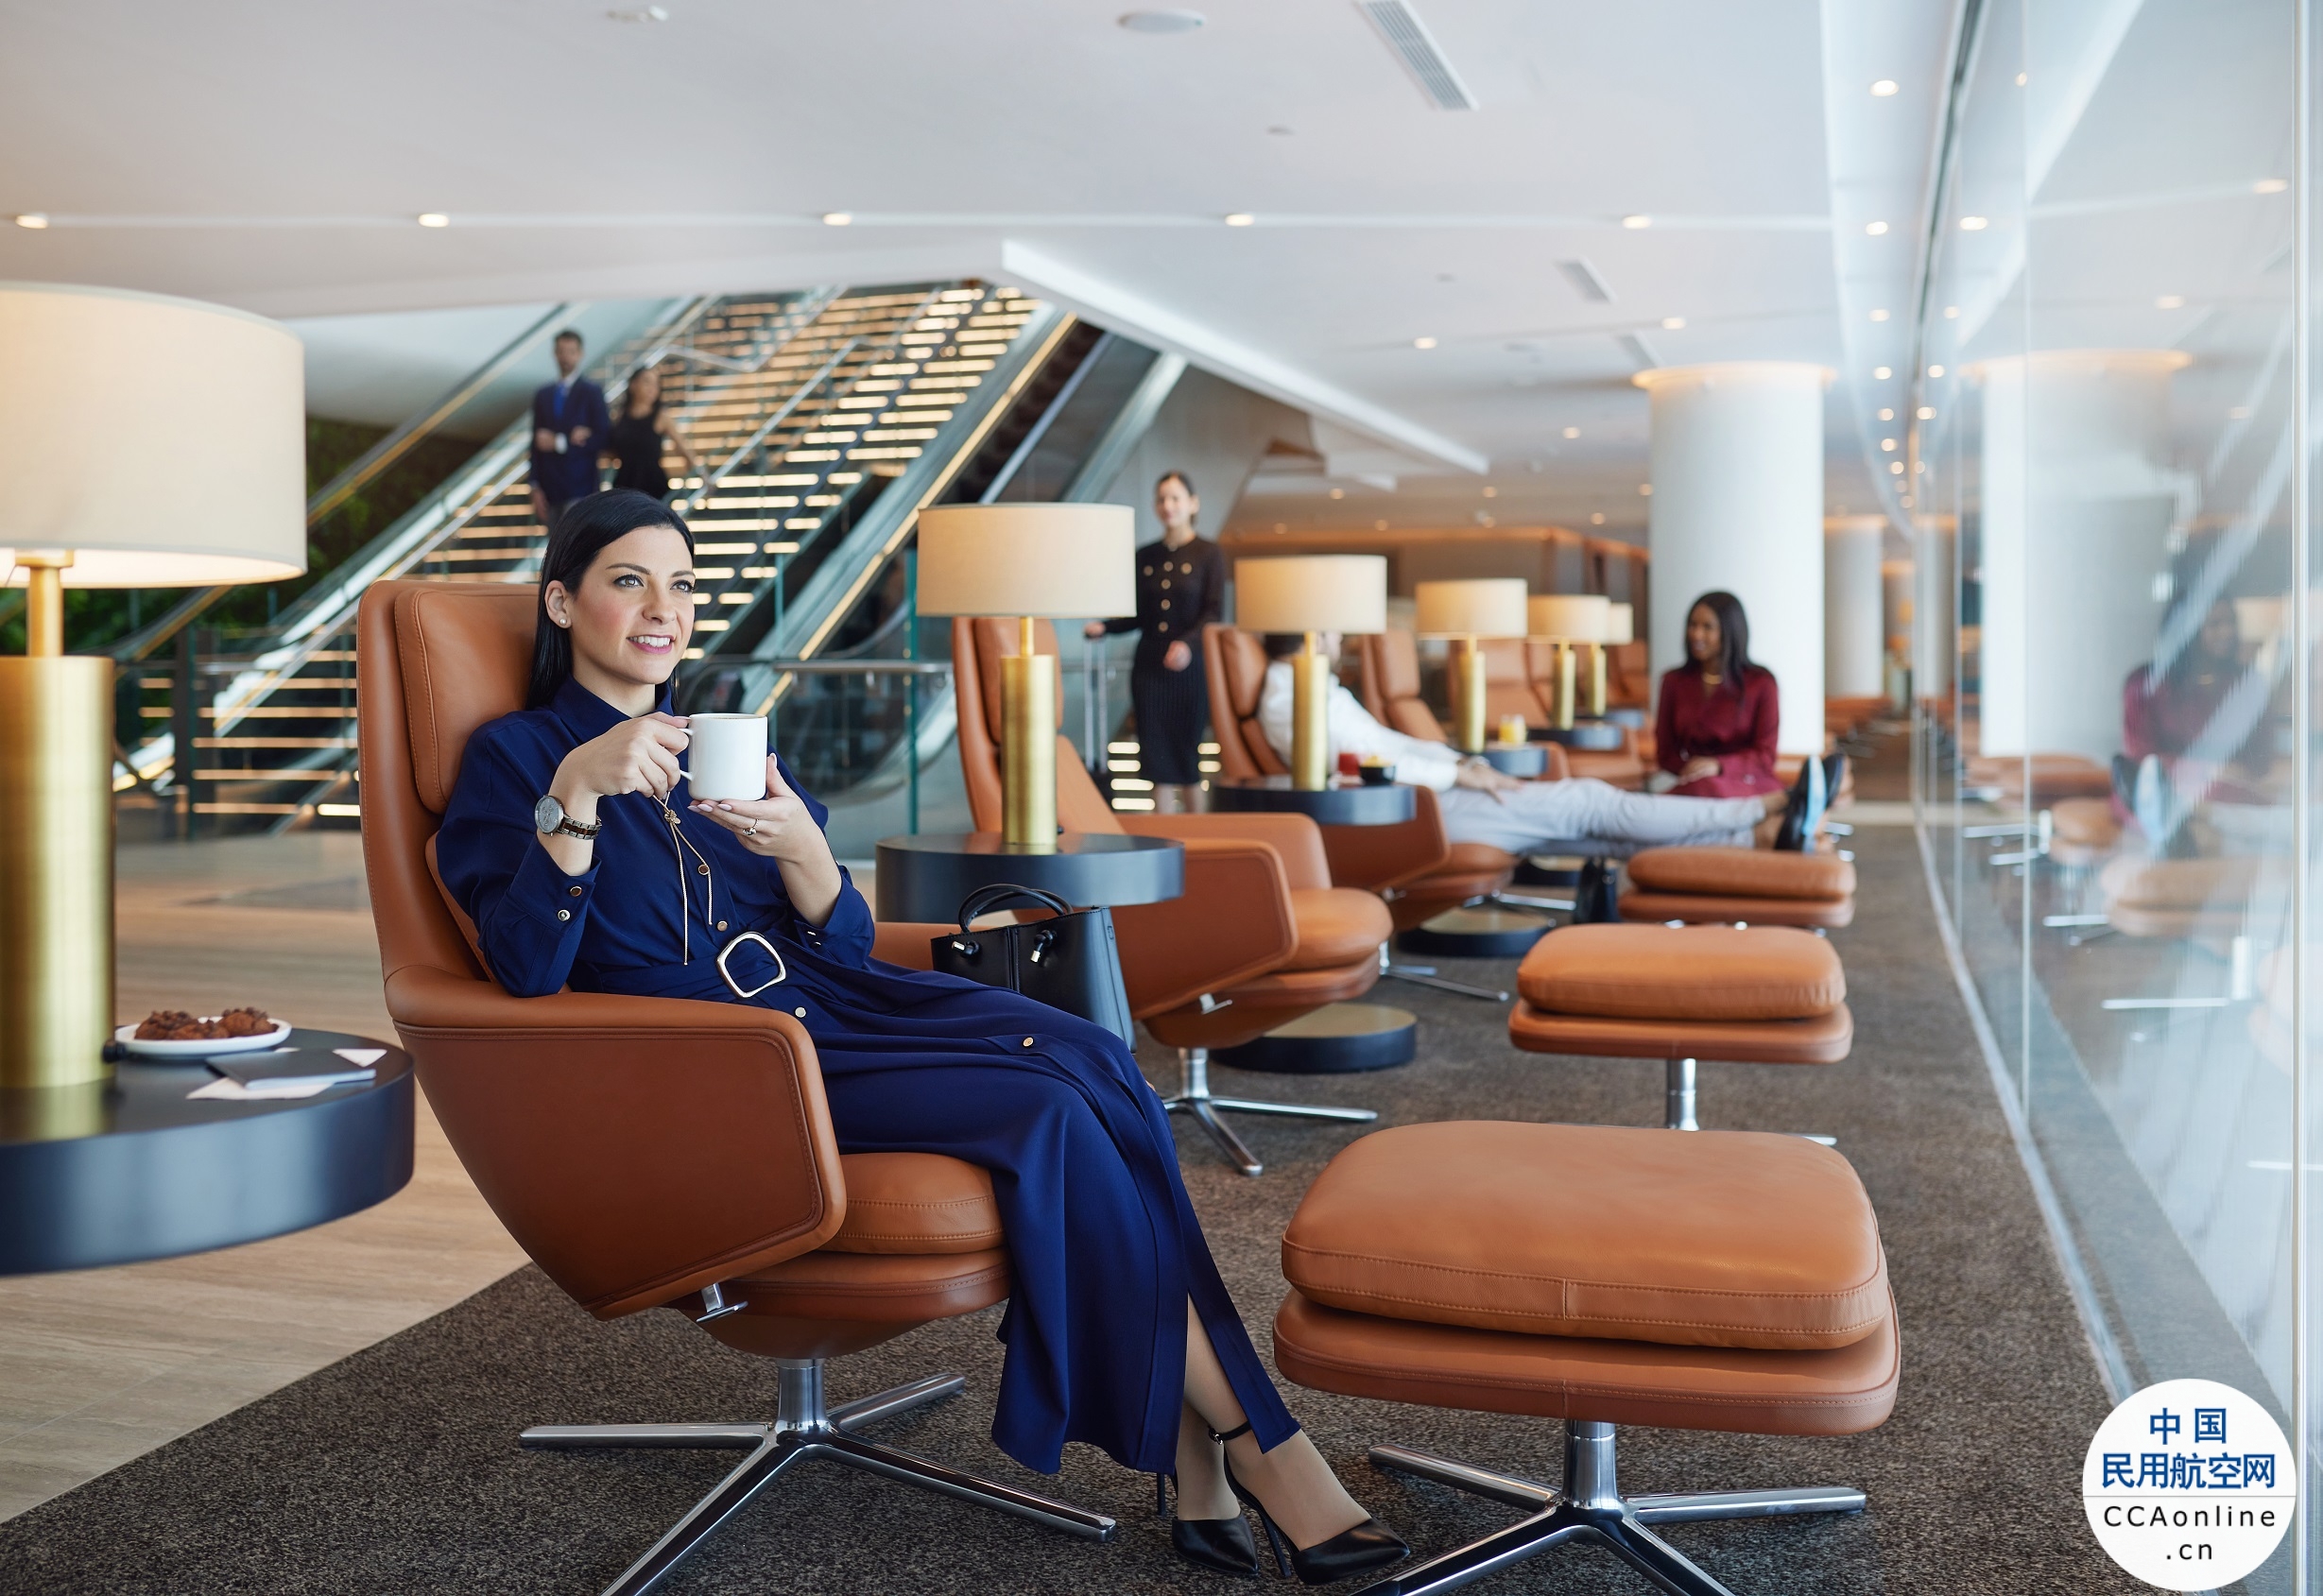 阿提哈德航空在阿布扎比国际机场全新A航站楼推出豪华贵宾休息室